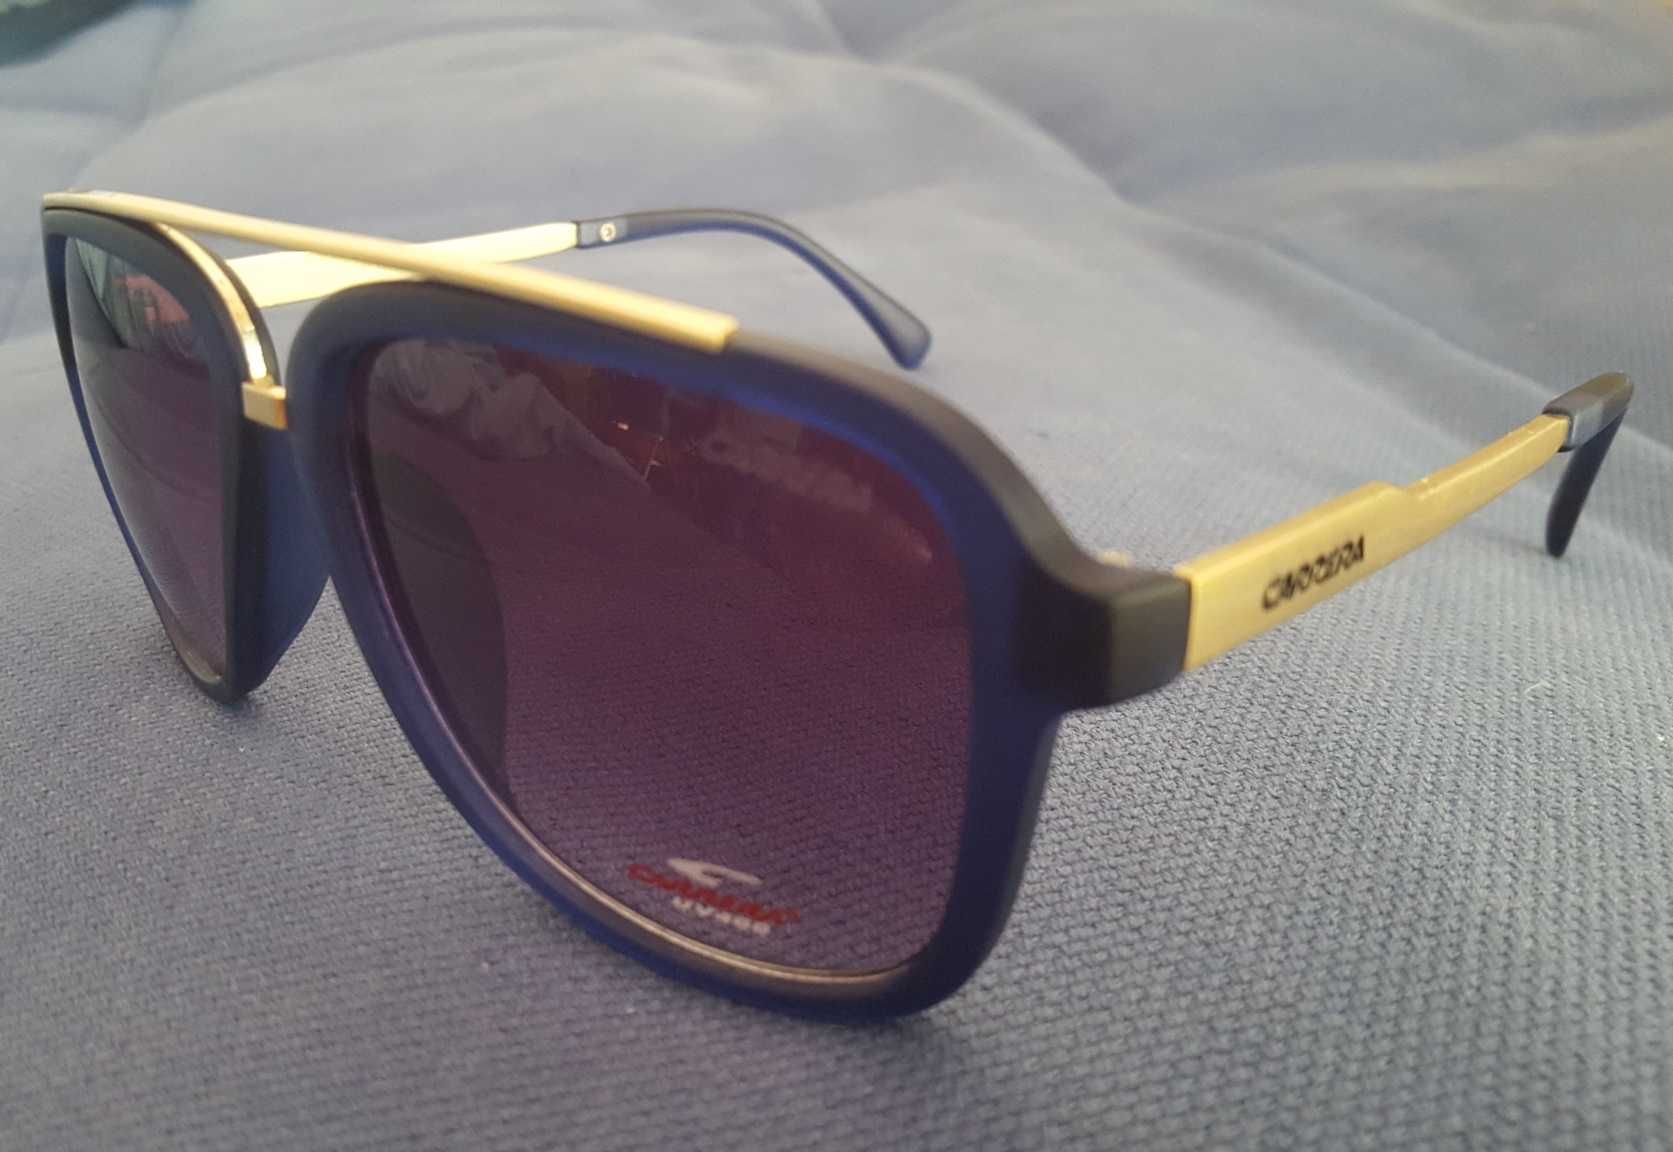 Óculos de sol Carrera pretos haste metal - 4 cores disponíveis